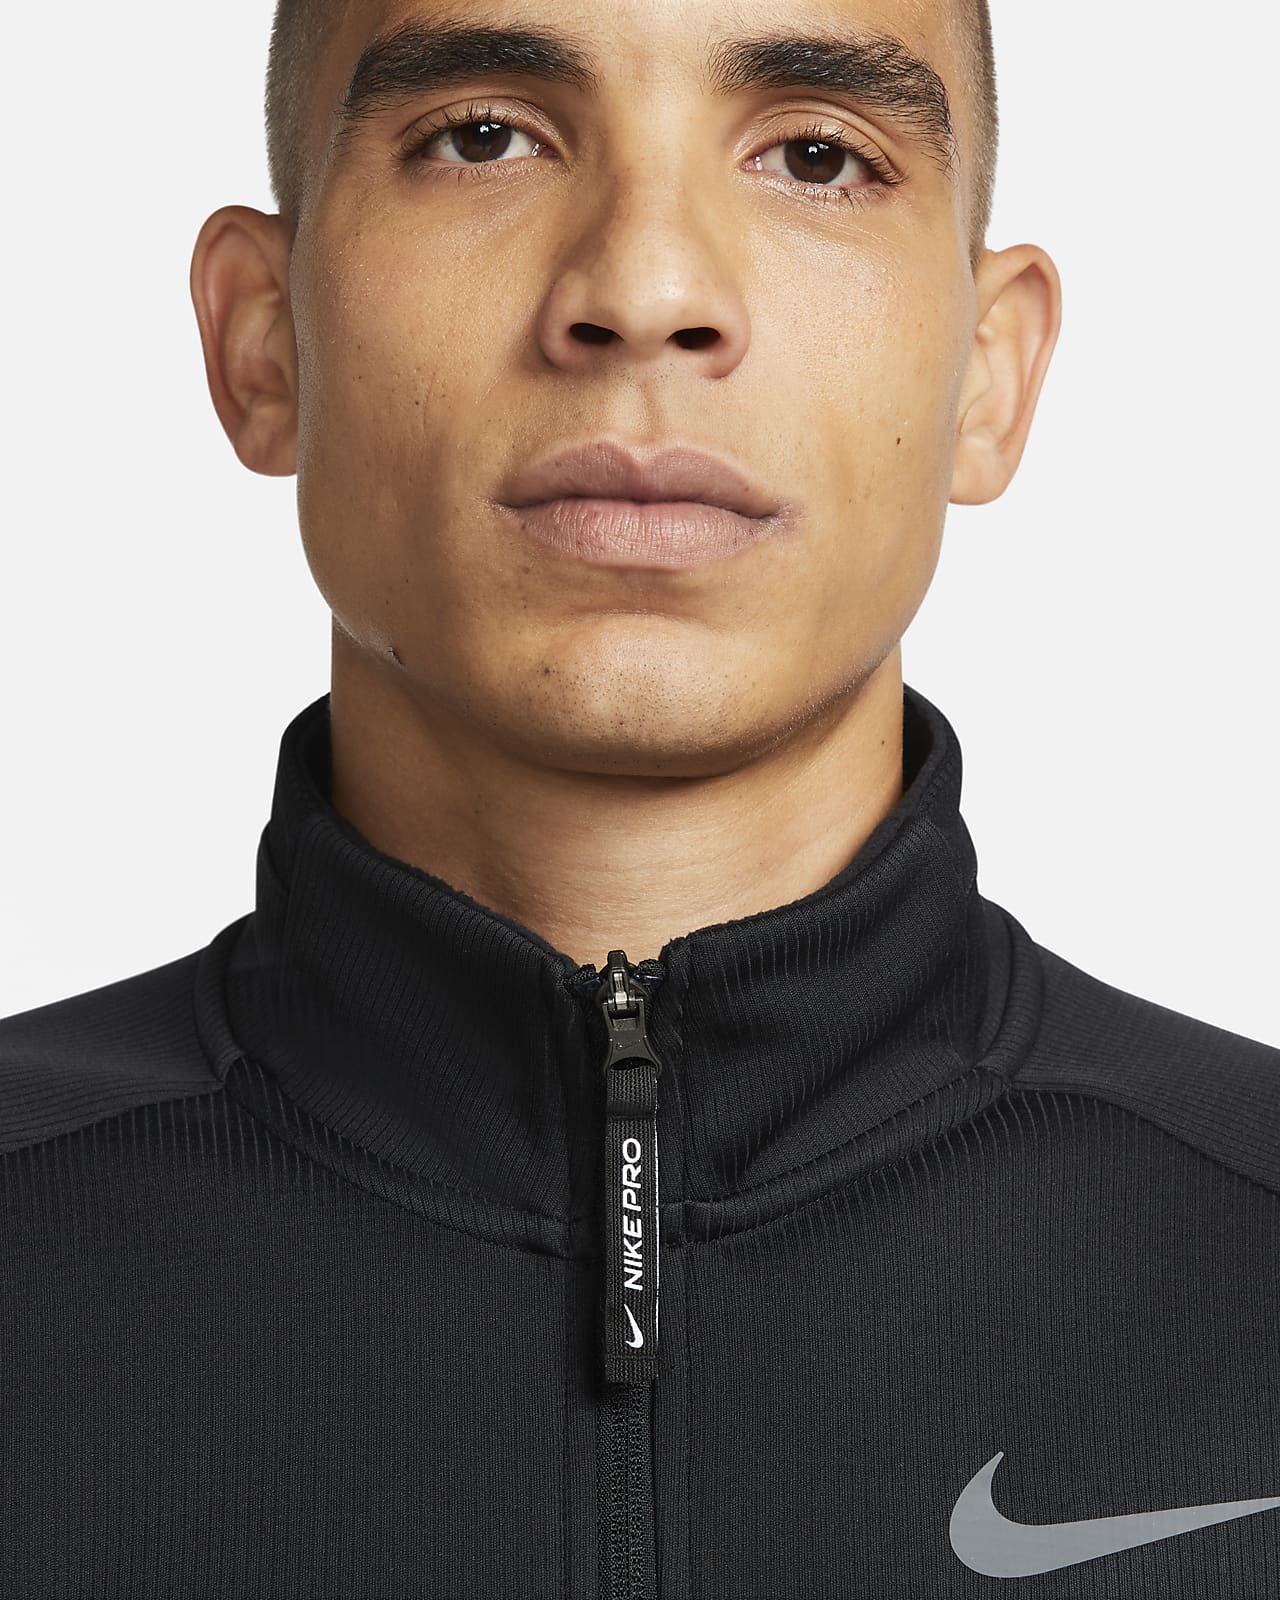 Voorkomen Vermeend Afhankelijkheid Nike Pro Therma-FIT Men's Full-Zip Long-Sleeve Training Top. Nike.com